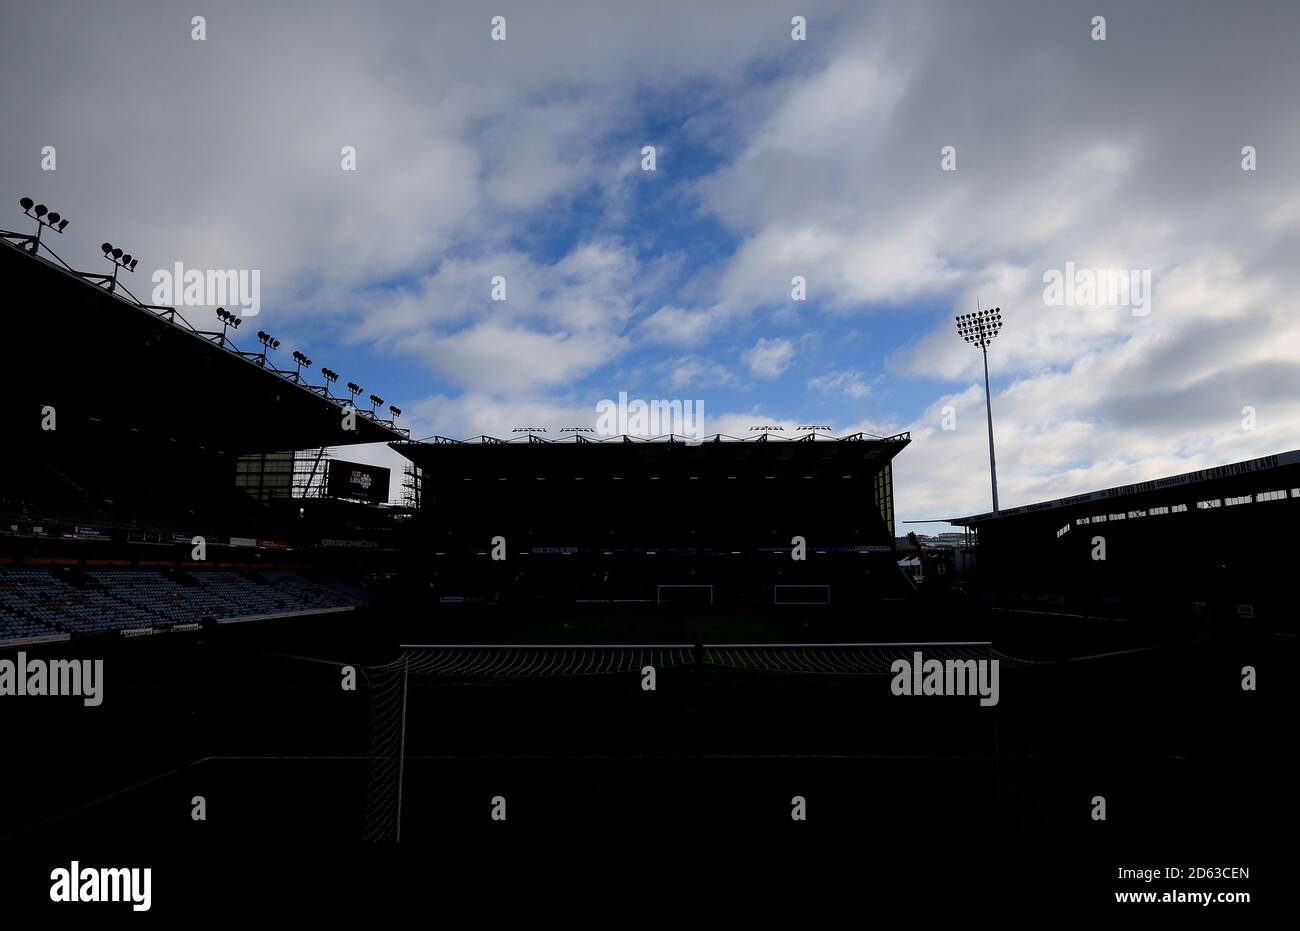 Una vista generale dello stadio Turf Moor di Burnley prima della partita della Premier League tra Burnley e Southampton. Foto Stock